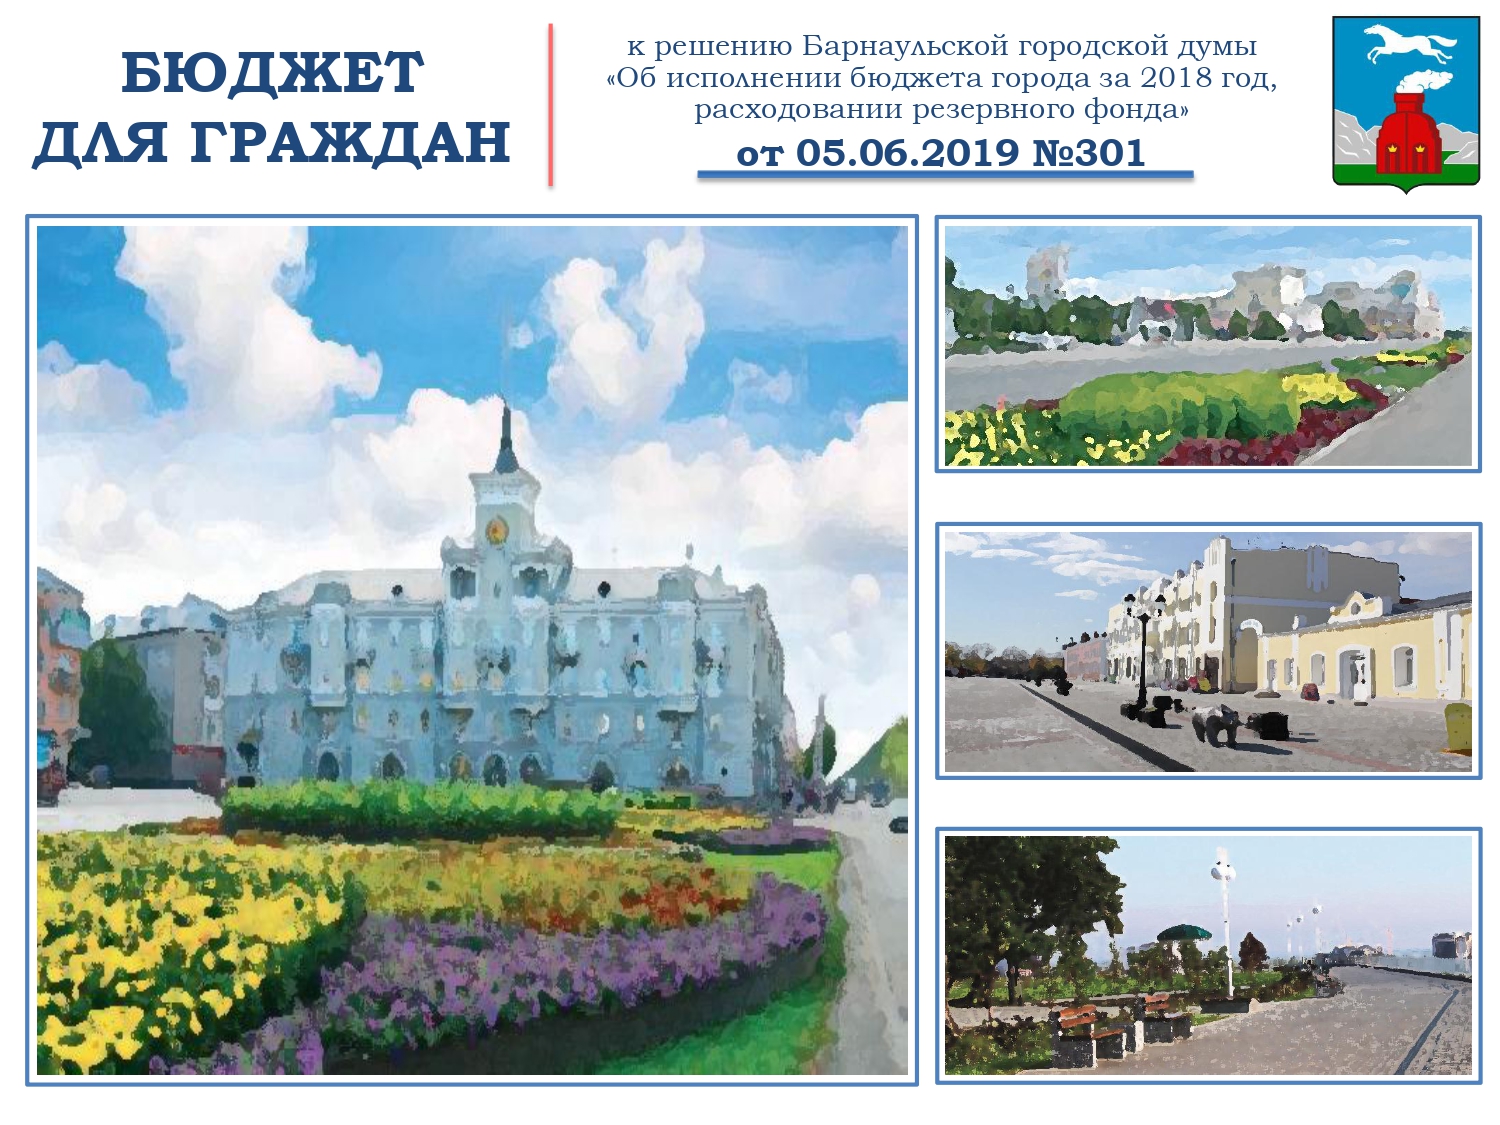 «Бюджет для граждан» города Барнаула за 2018 год»